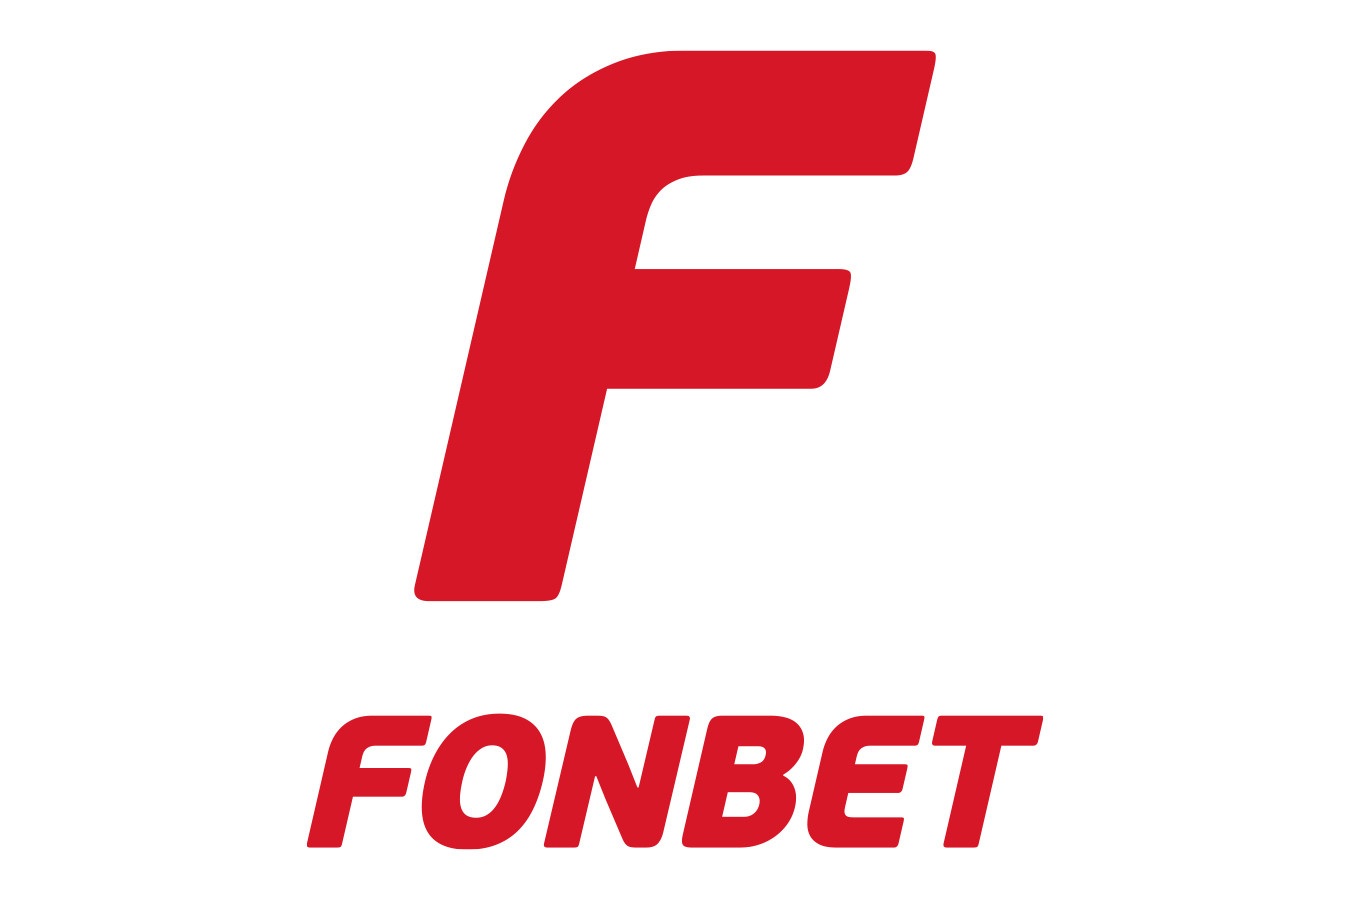 Fonbet букмекерская контора скачать андроид ставка рефинансирования посчитать онлайн